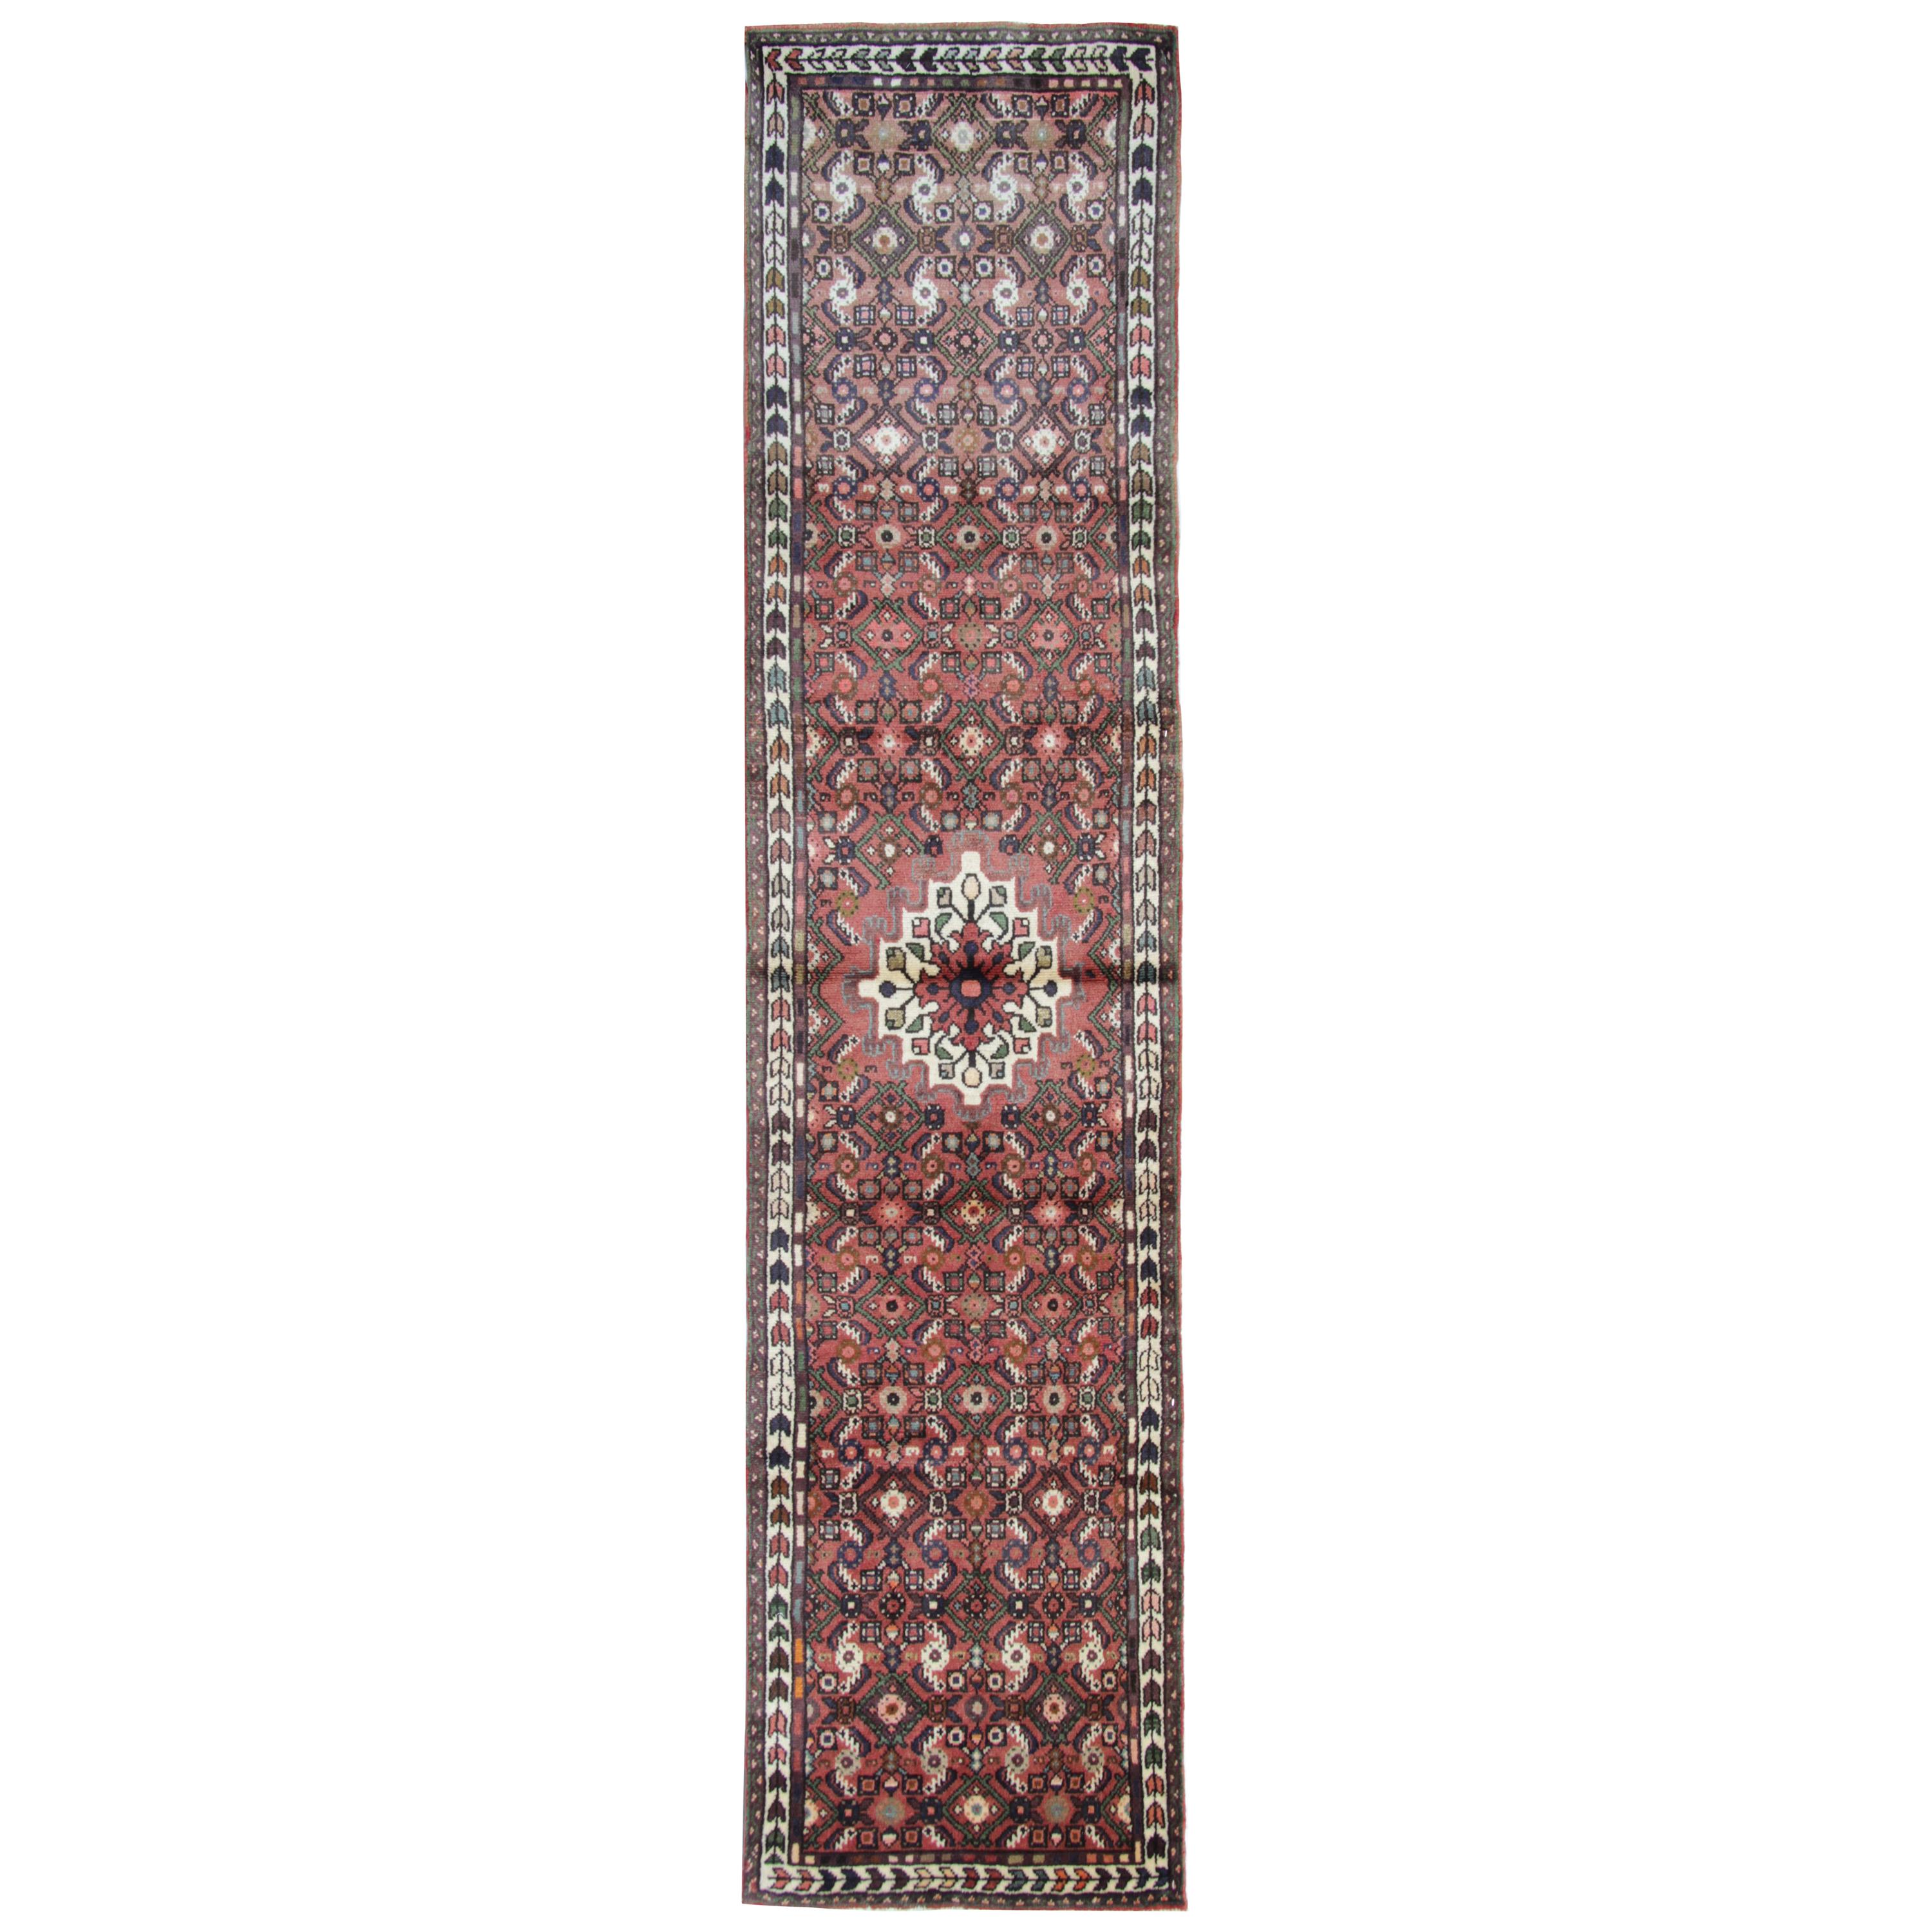 Vintage Oriental Carpet Runner Rug, Handmade Wool Hallway Runner Rug